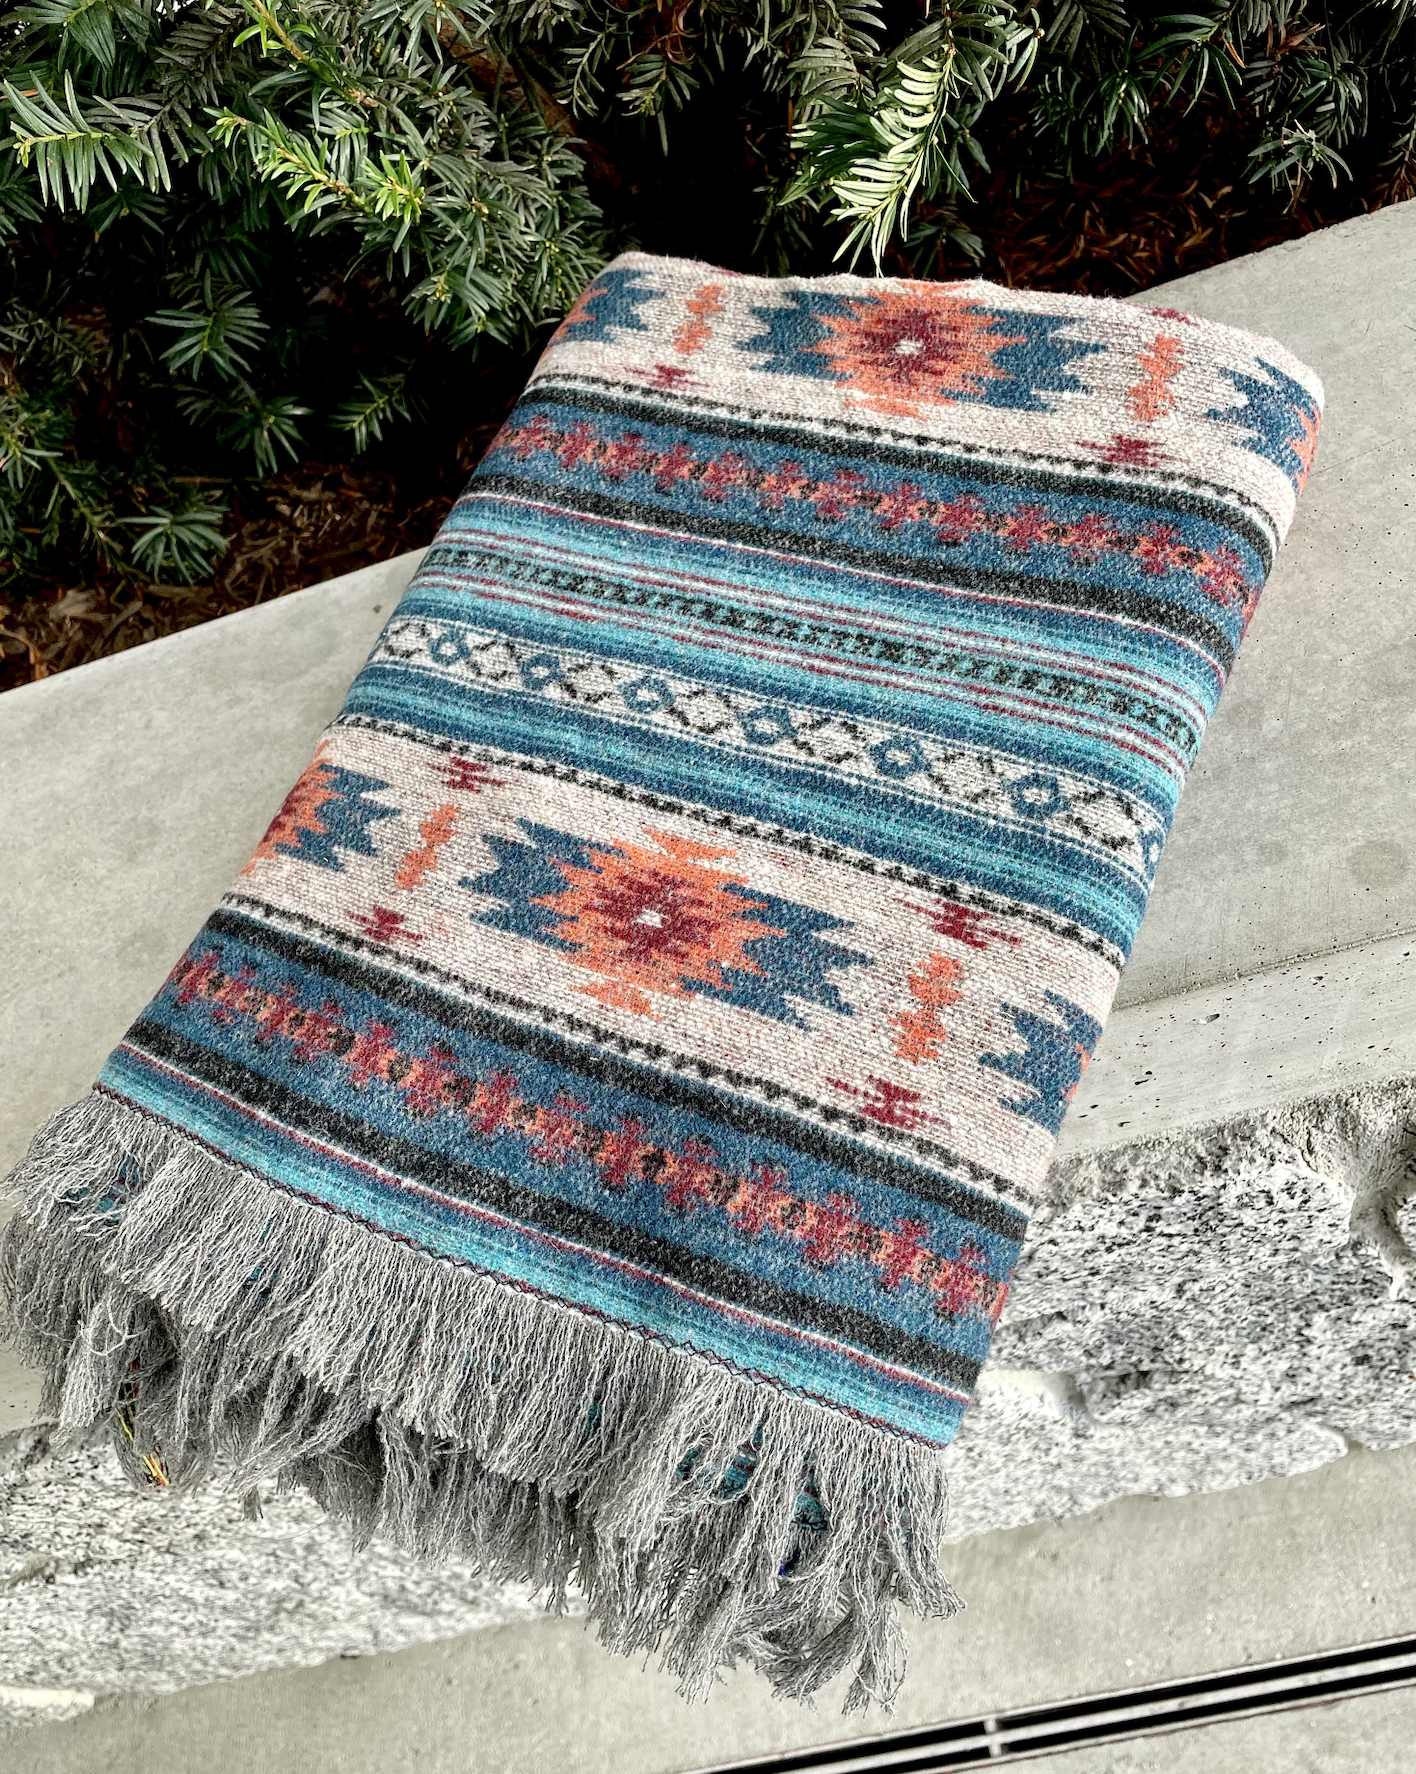 west coast alchemist handmade blankets baskets in abbotsford fraser valley british columbia canada 14